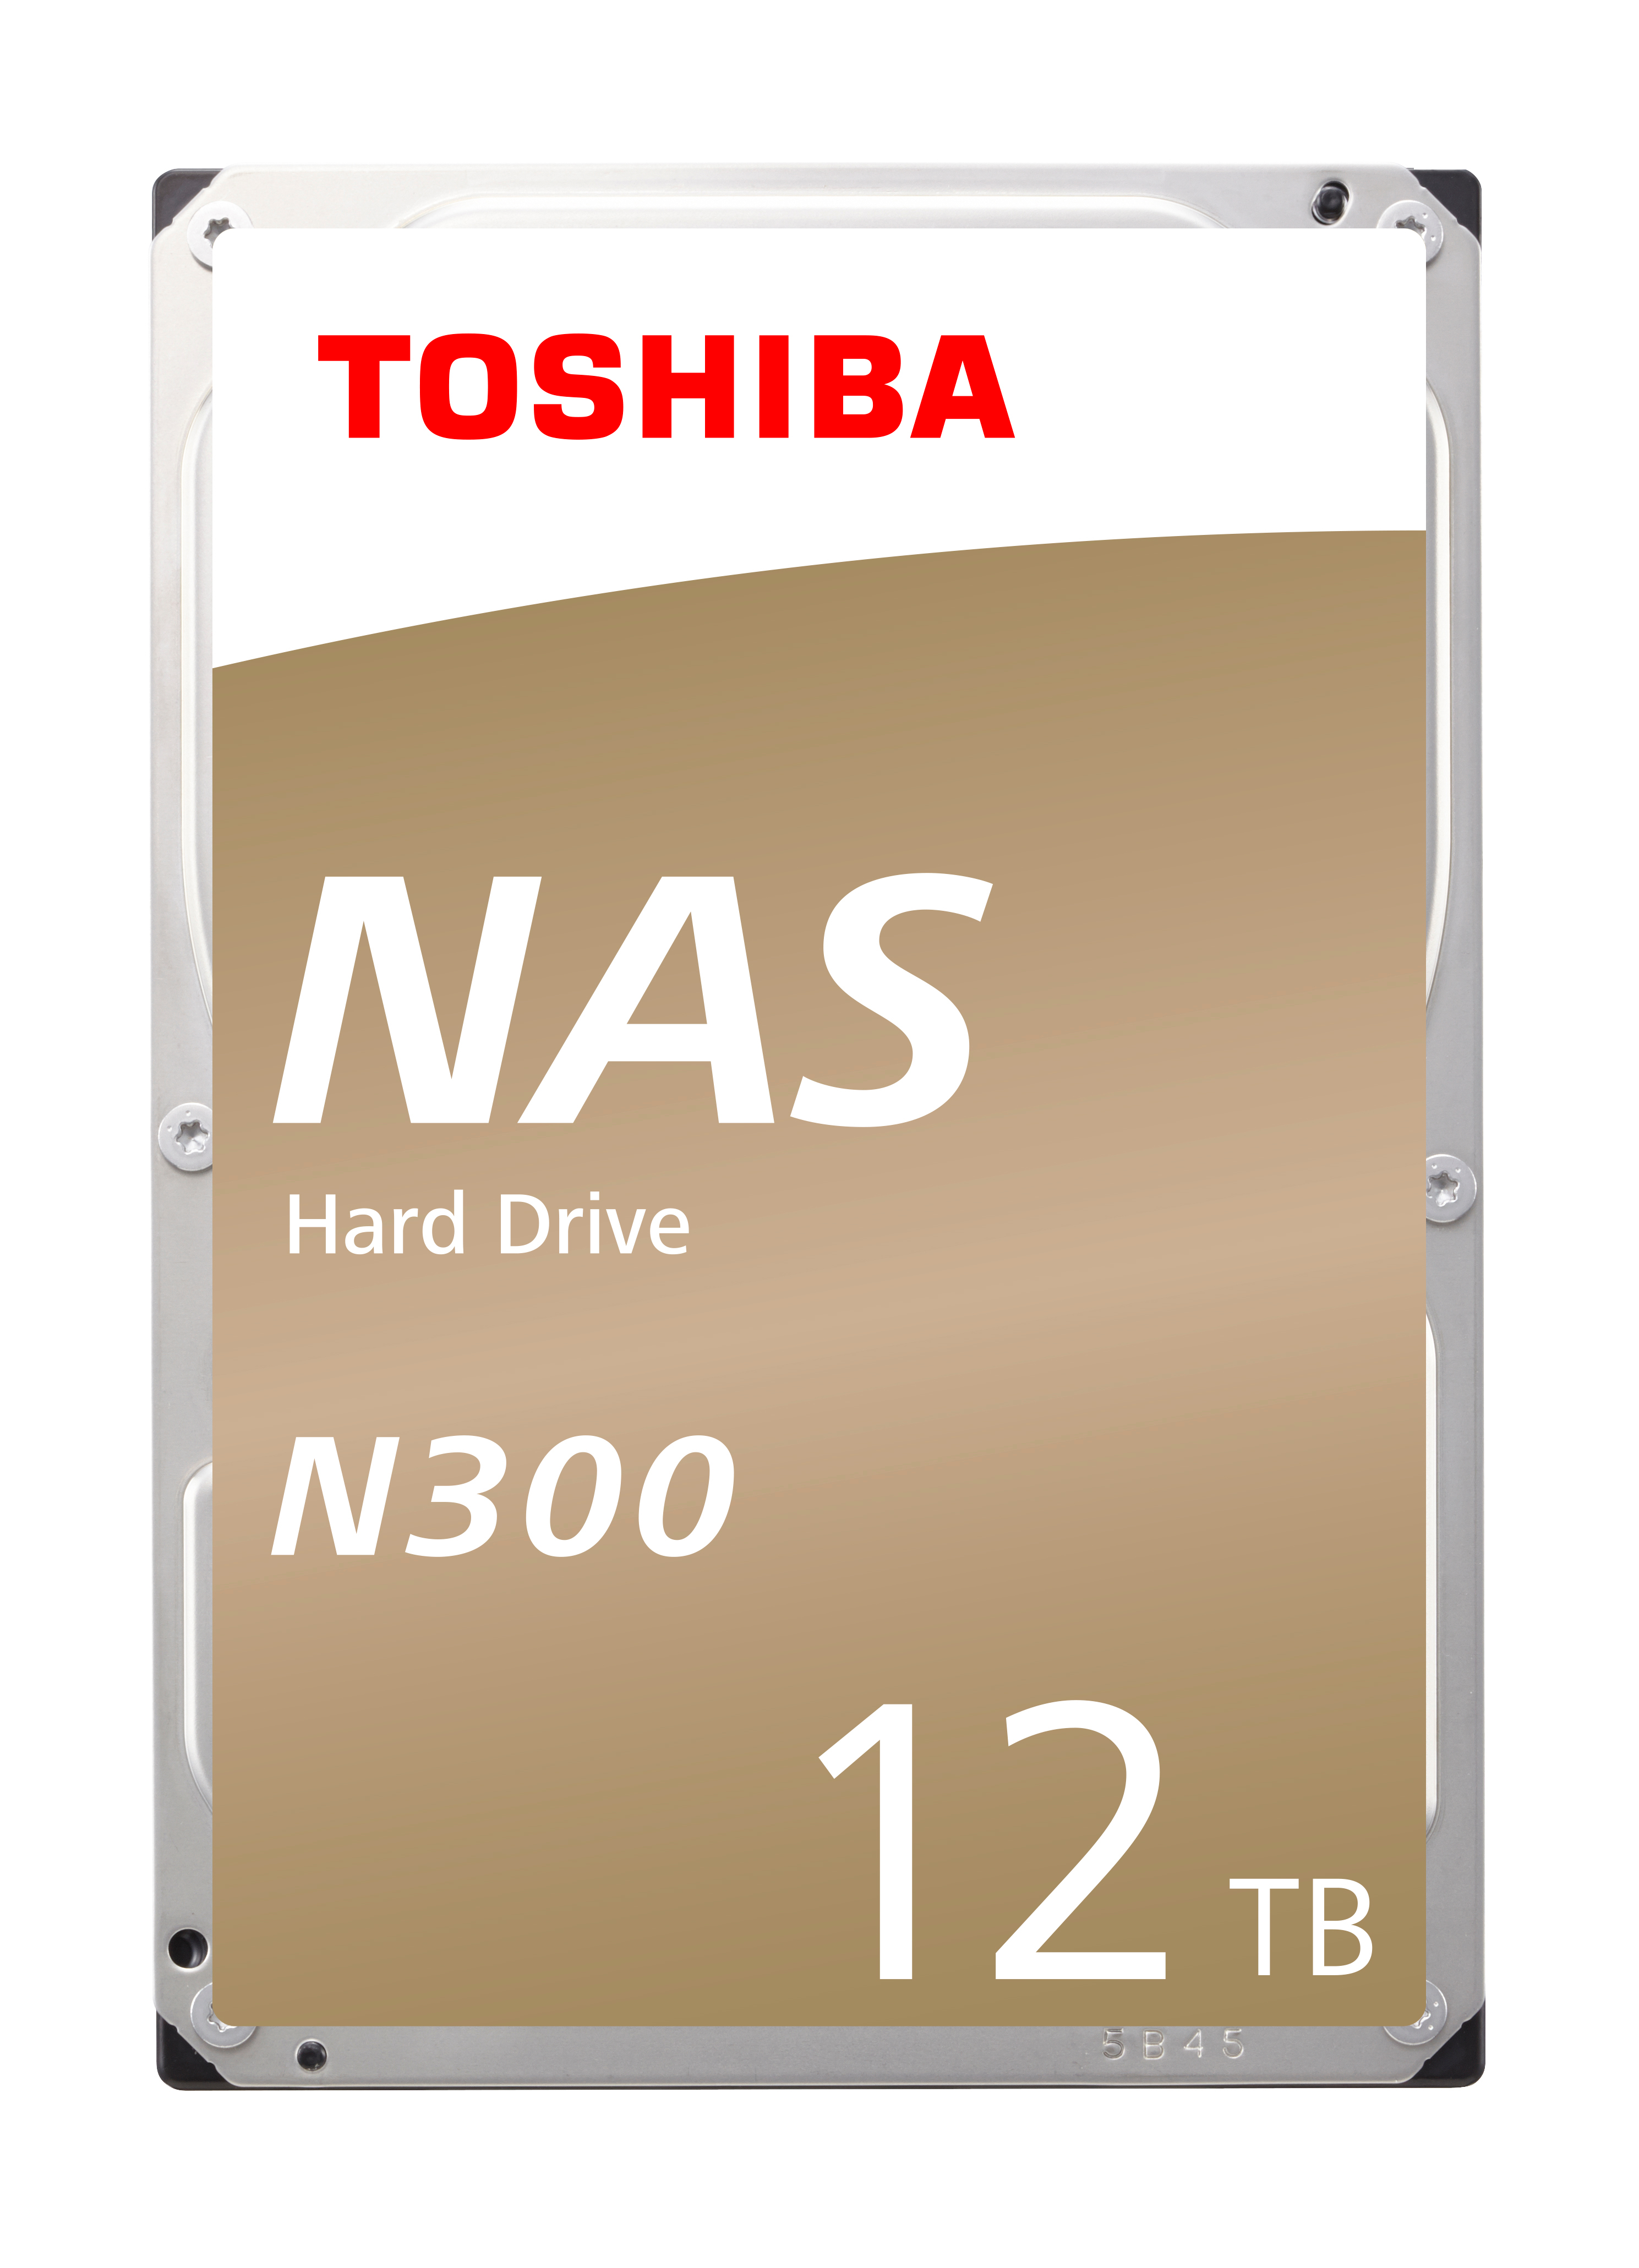 TOSHIBA HDD N300 NAS 12TB HDWG21CEZSTA internal, SATA 3.5 inch